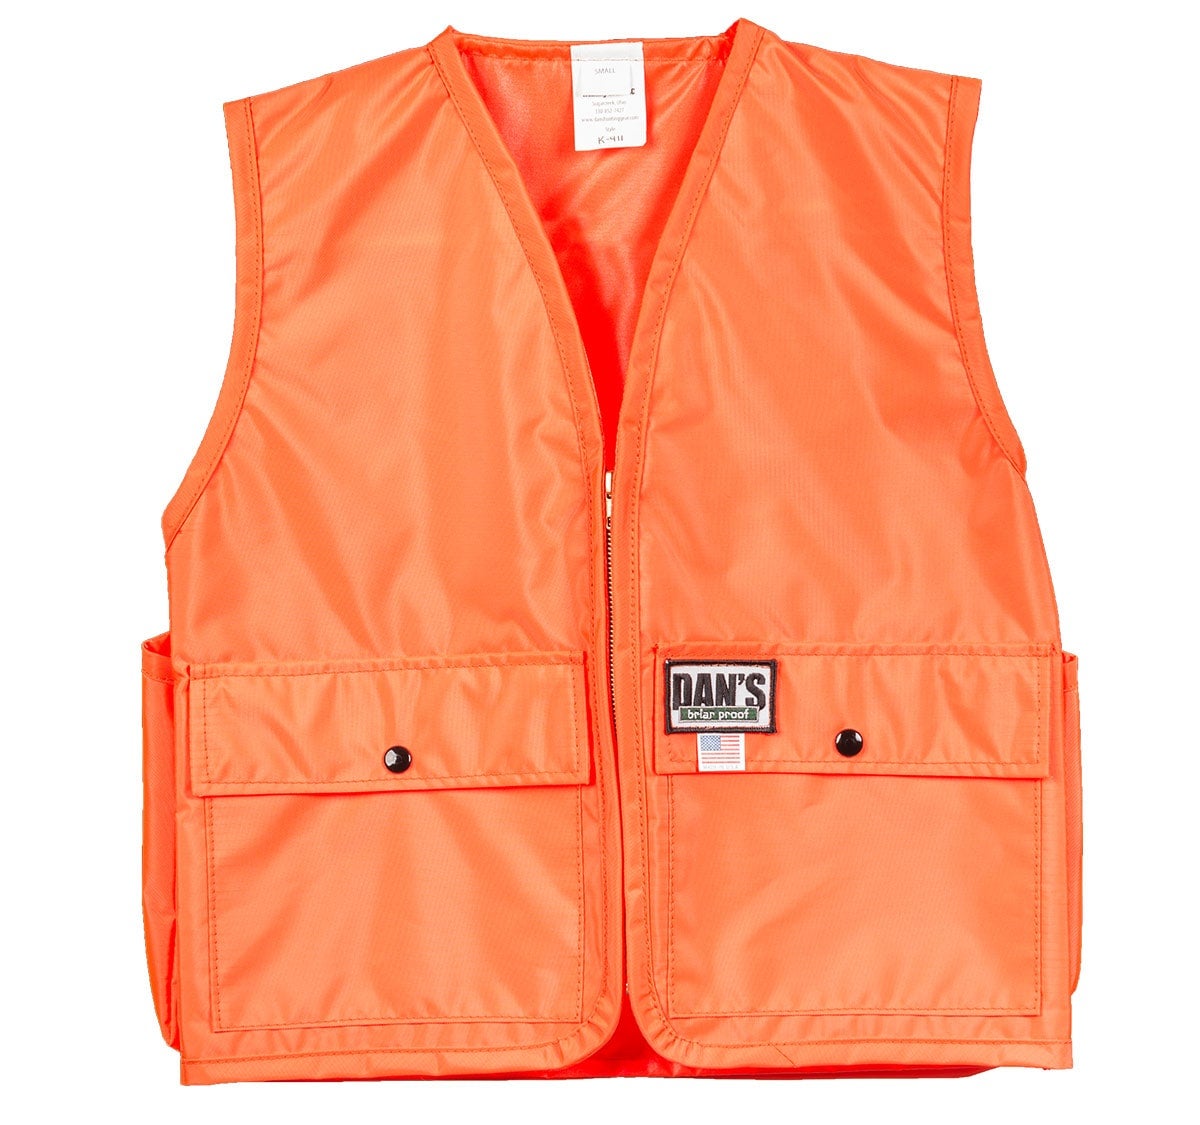 Kid's Blaze Orange Vest w/Attached Gamebag